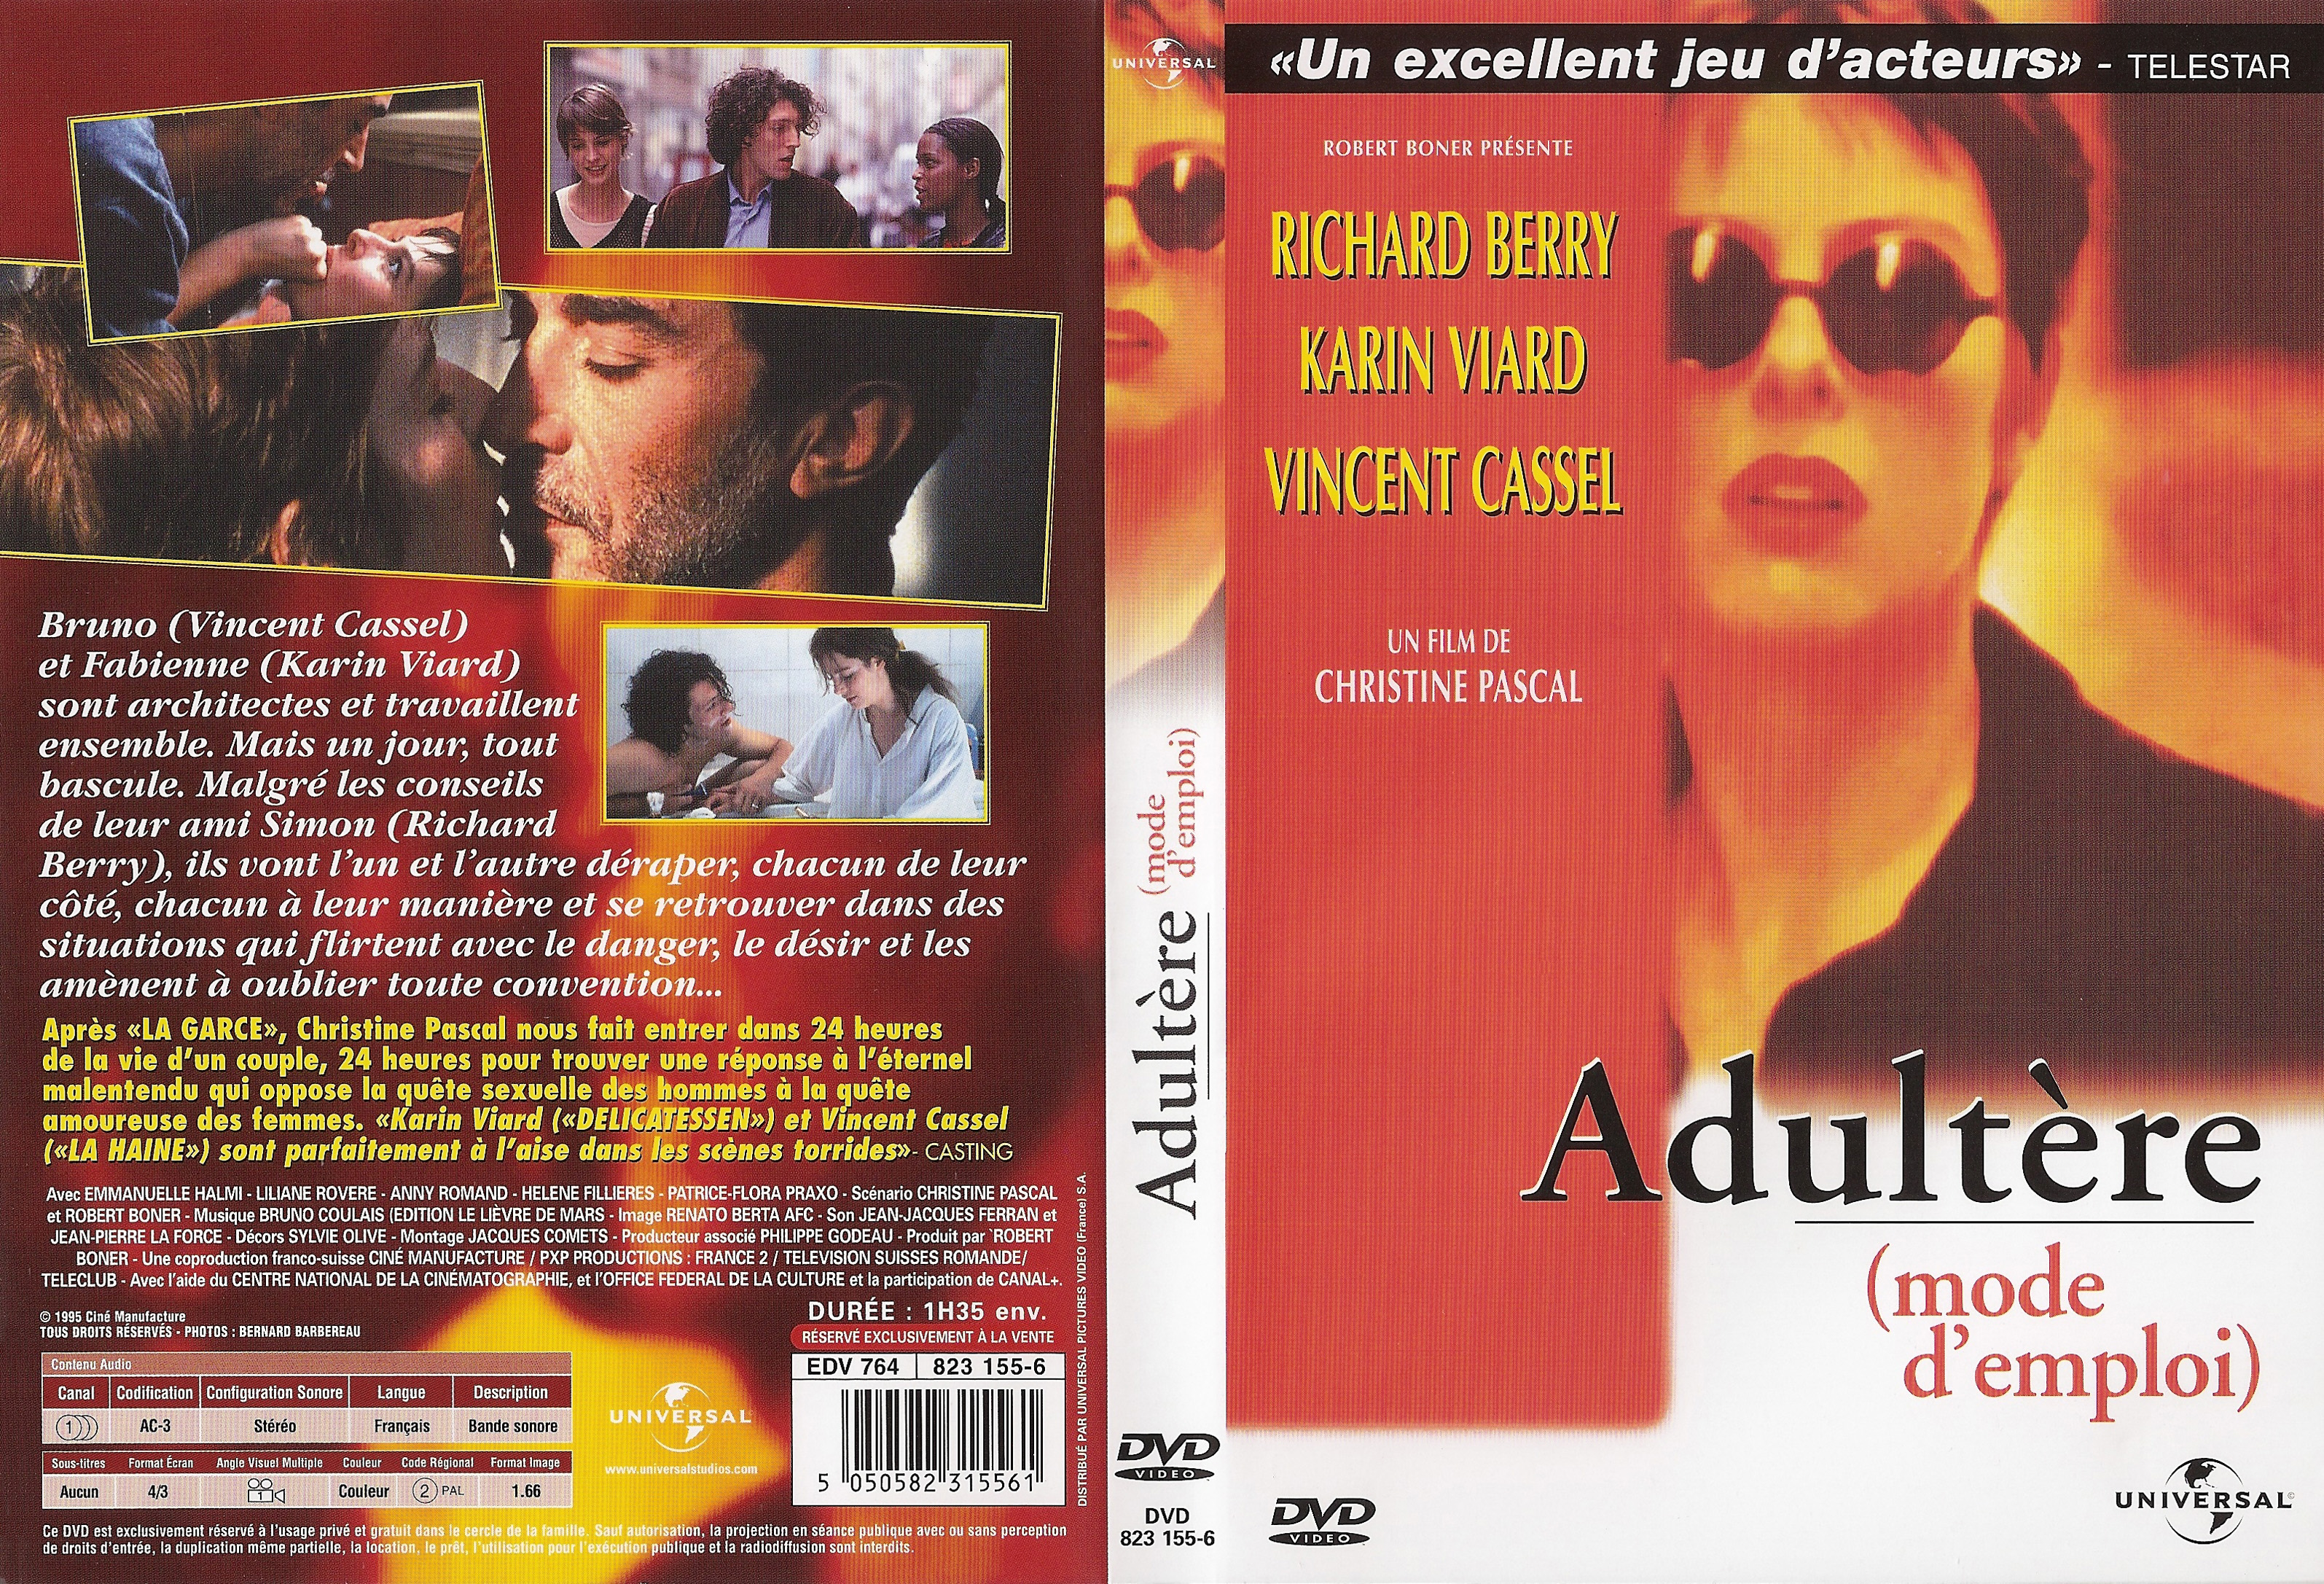 Jaquette DVD Adultre (mode d